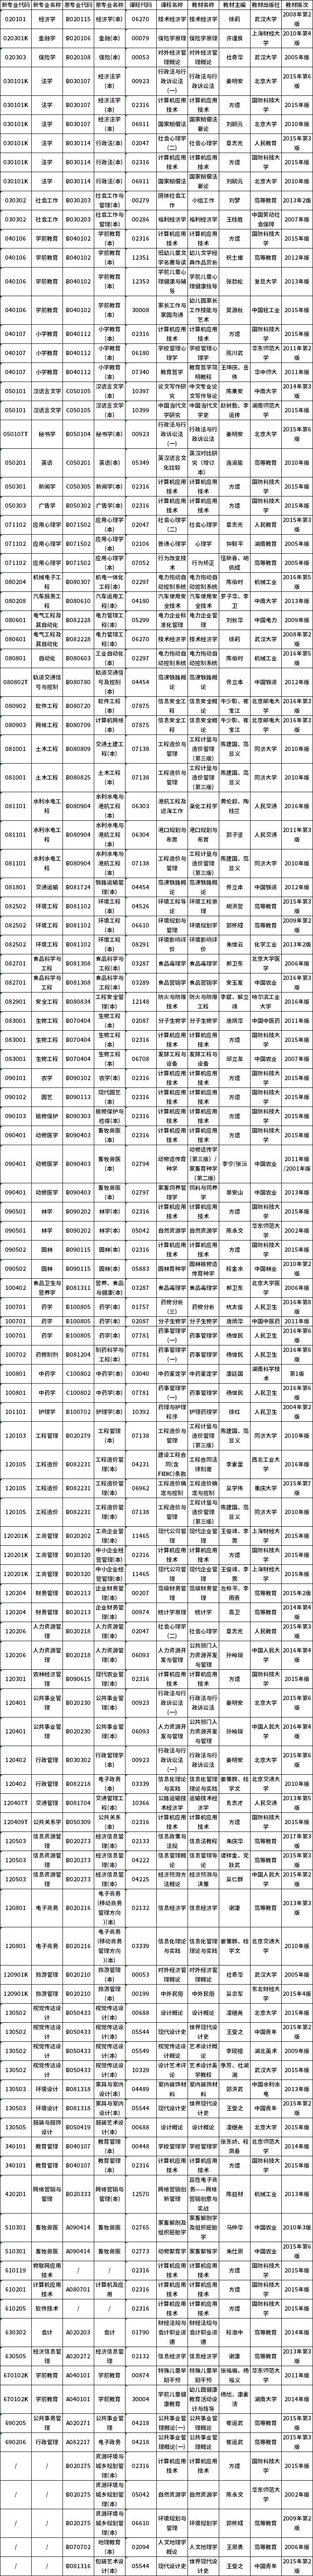 2020年湖南自考计算机化考试课程安排及教材目录